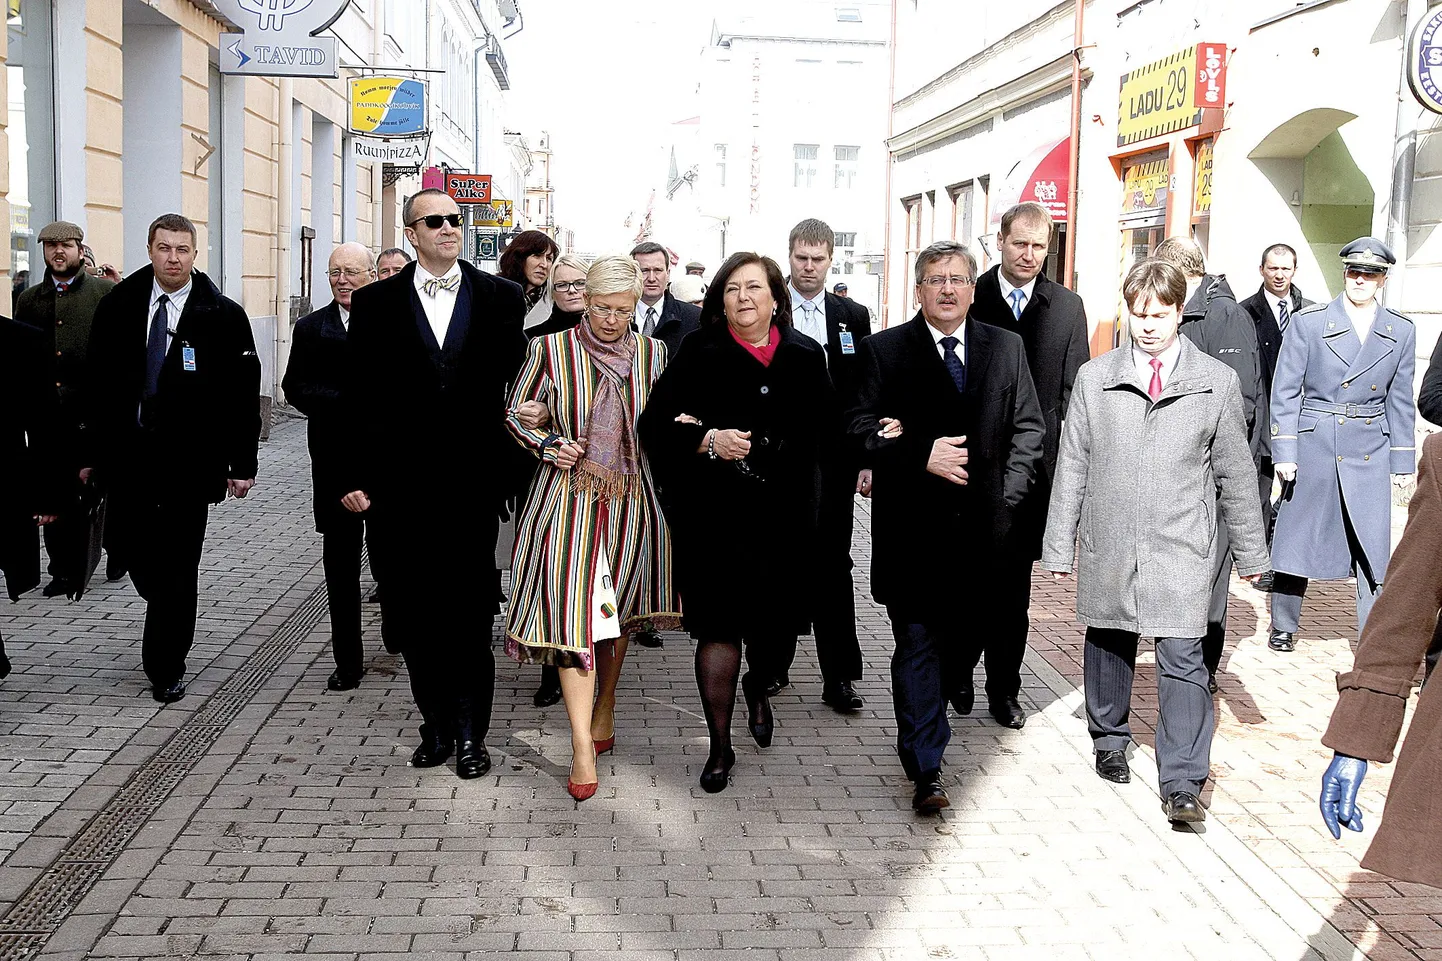 Lisaks aulaloengule kohtus Komorowski Tartu Ülikooli ja Tartu linna juhtide ja siinse Poola kogukonna liikmetega ning tegi jalutuskäigu Tartu kesklinnas.